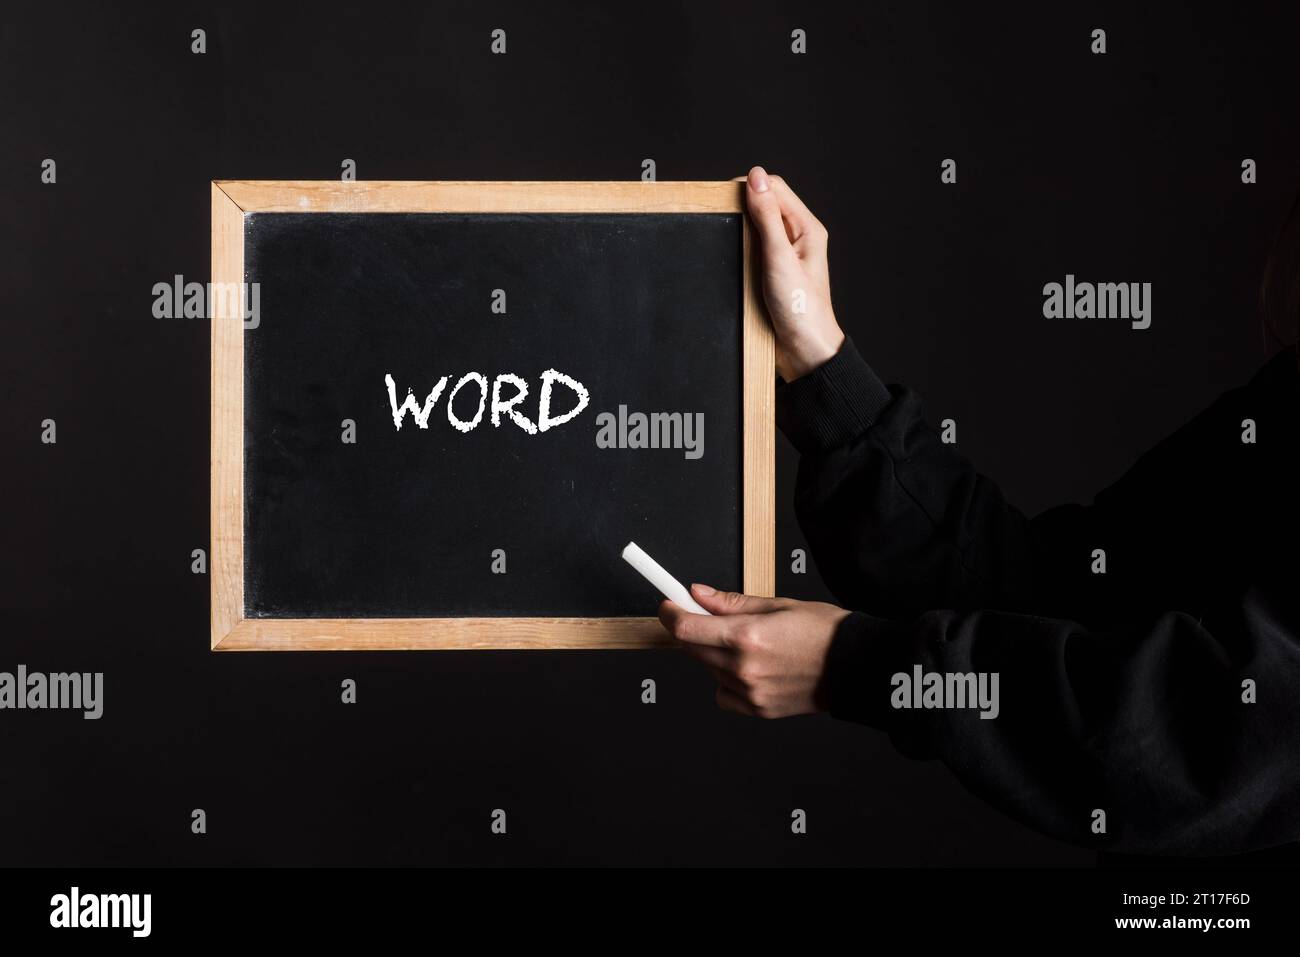 Simbolo per scrivere parole e comprensione del linguaggio simbolo per scrivere parole e credito linguistico: Imago/Alamy Live News Foto Stock